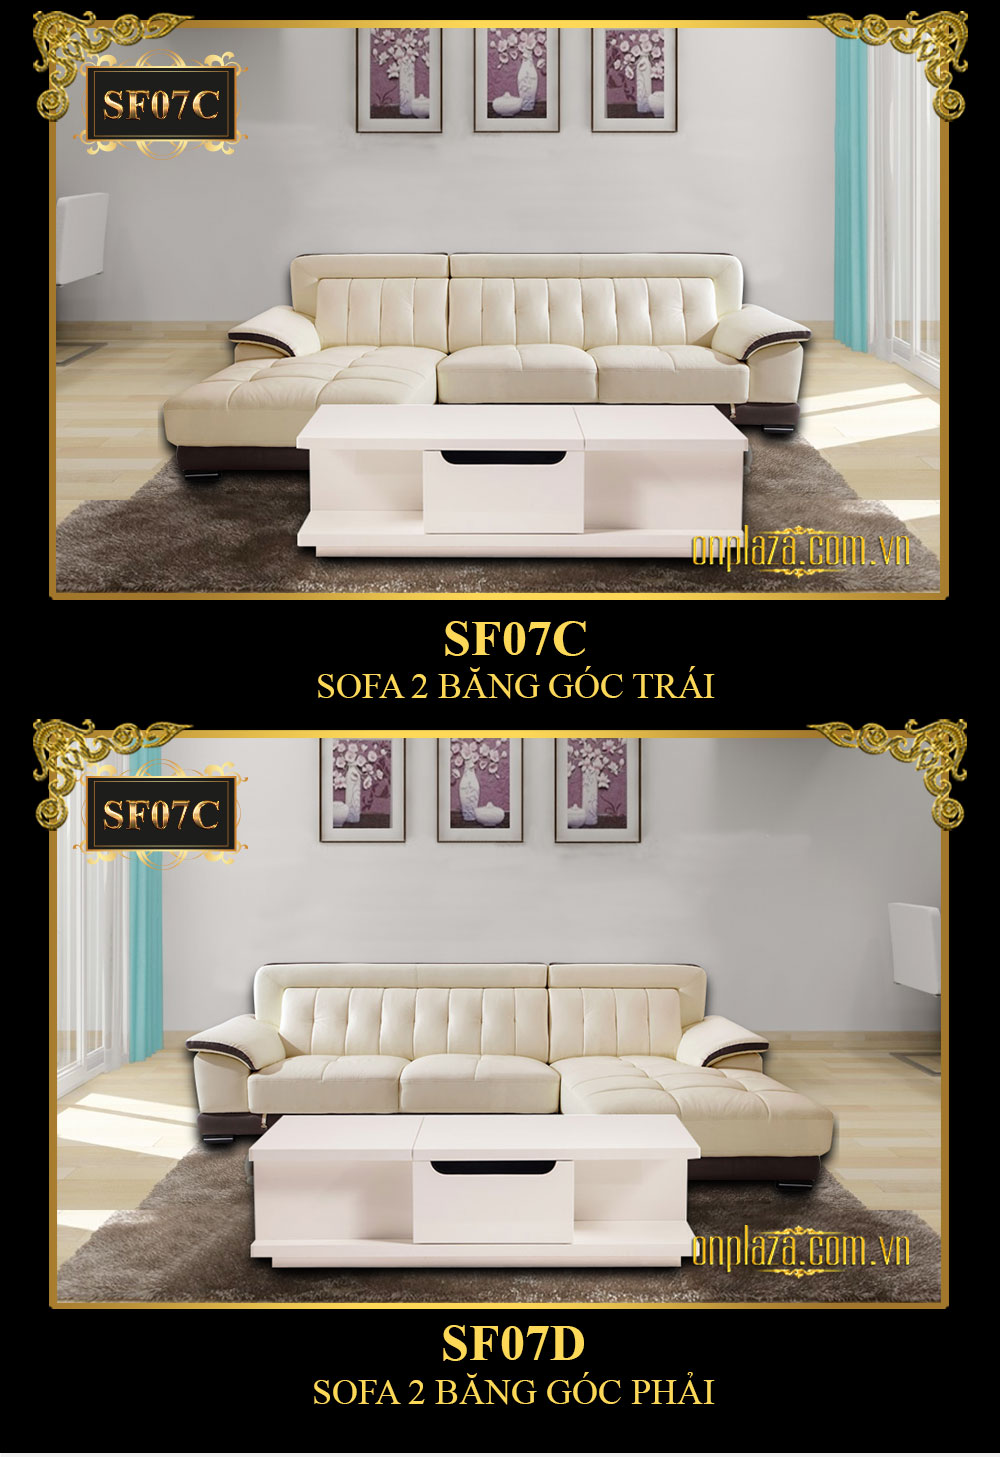 Sofa đa năng hiện đại 3 băng góc phải cao cấp SF07